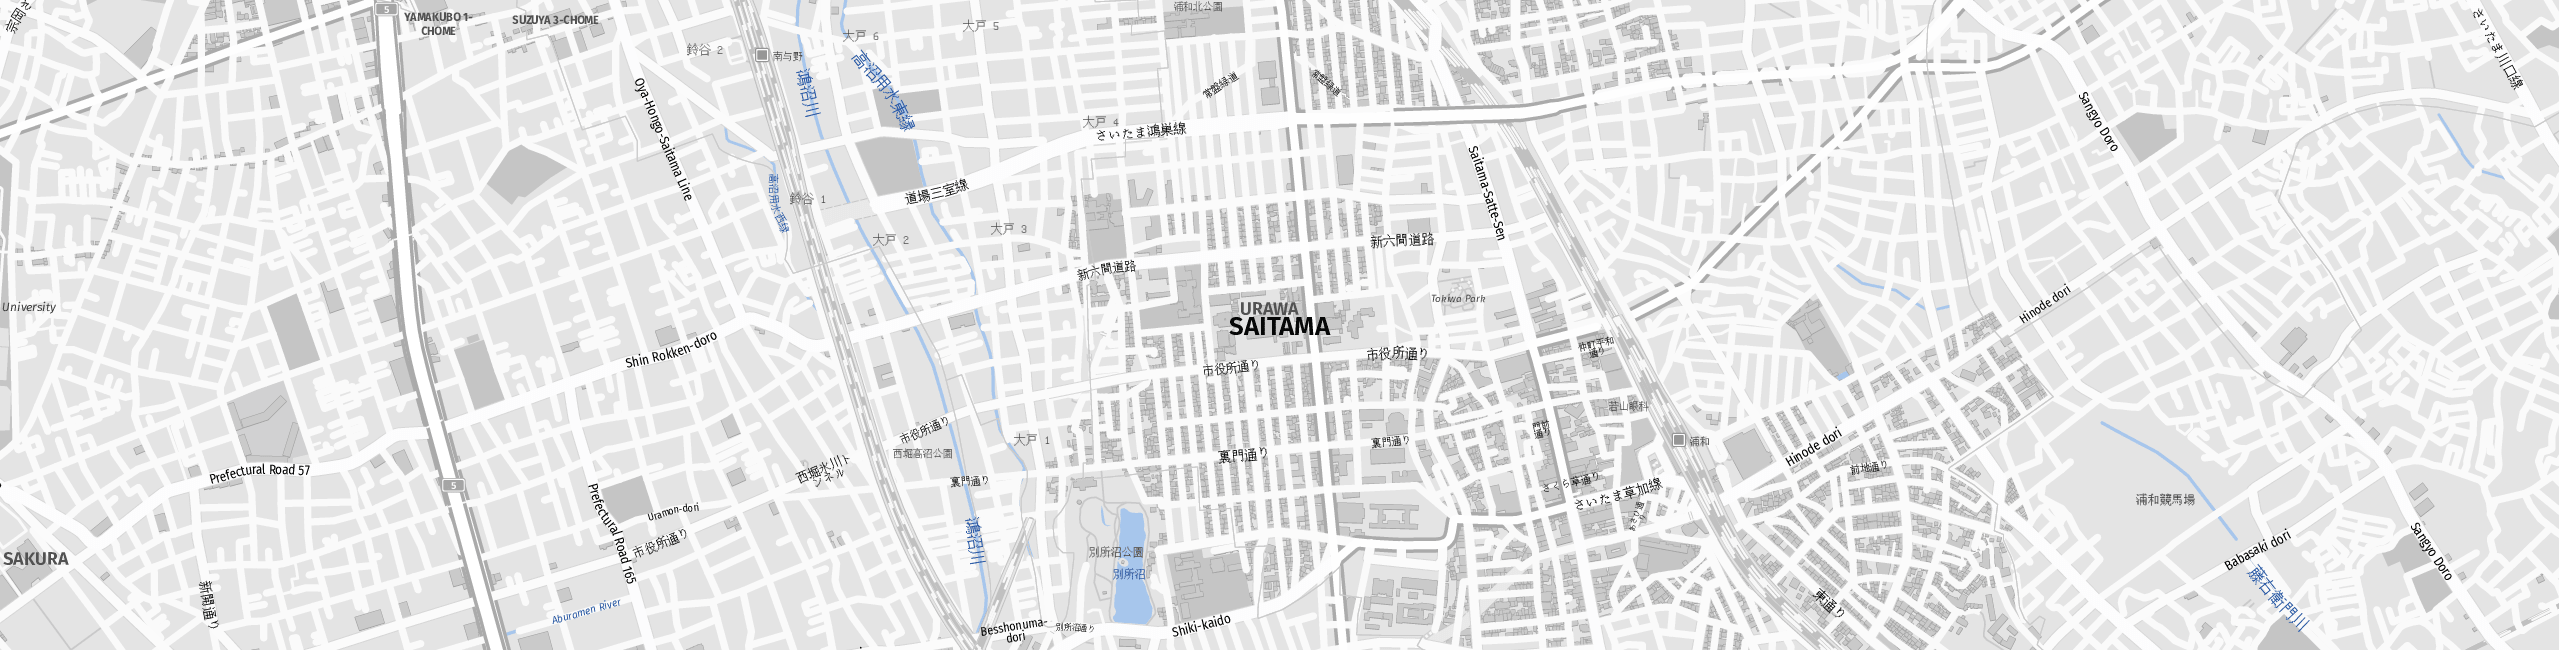 Stadtplan Saitama zum Downloaden.